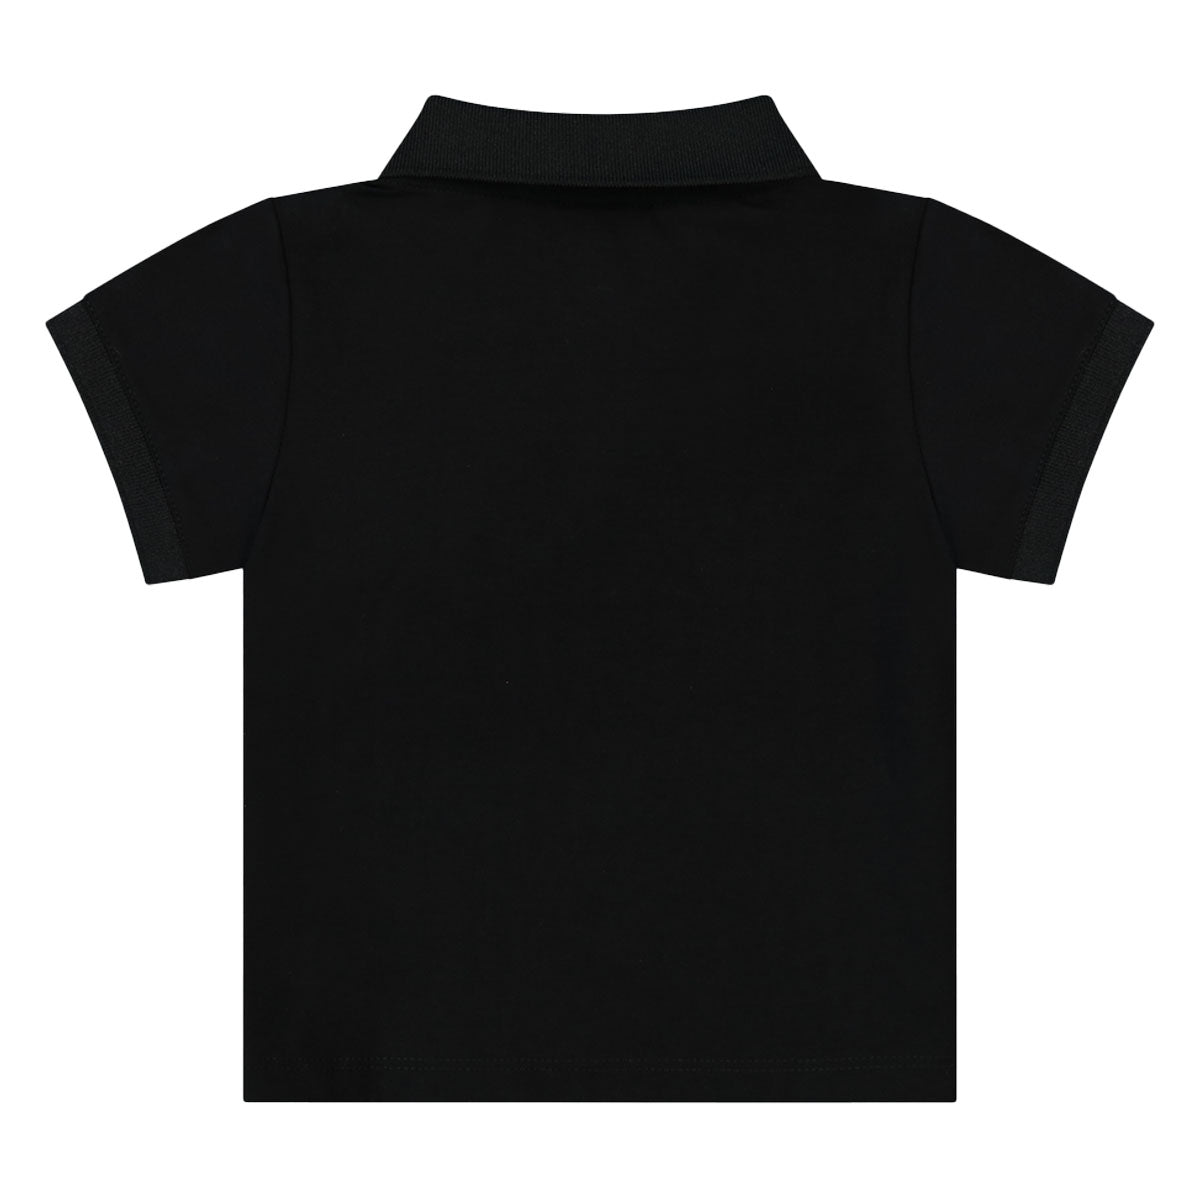 חולצת צווארון REPLAY לוגו בצד לתינוקות